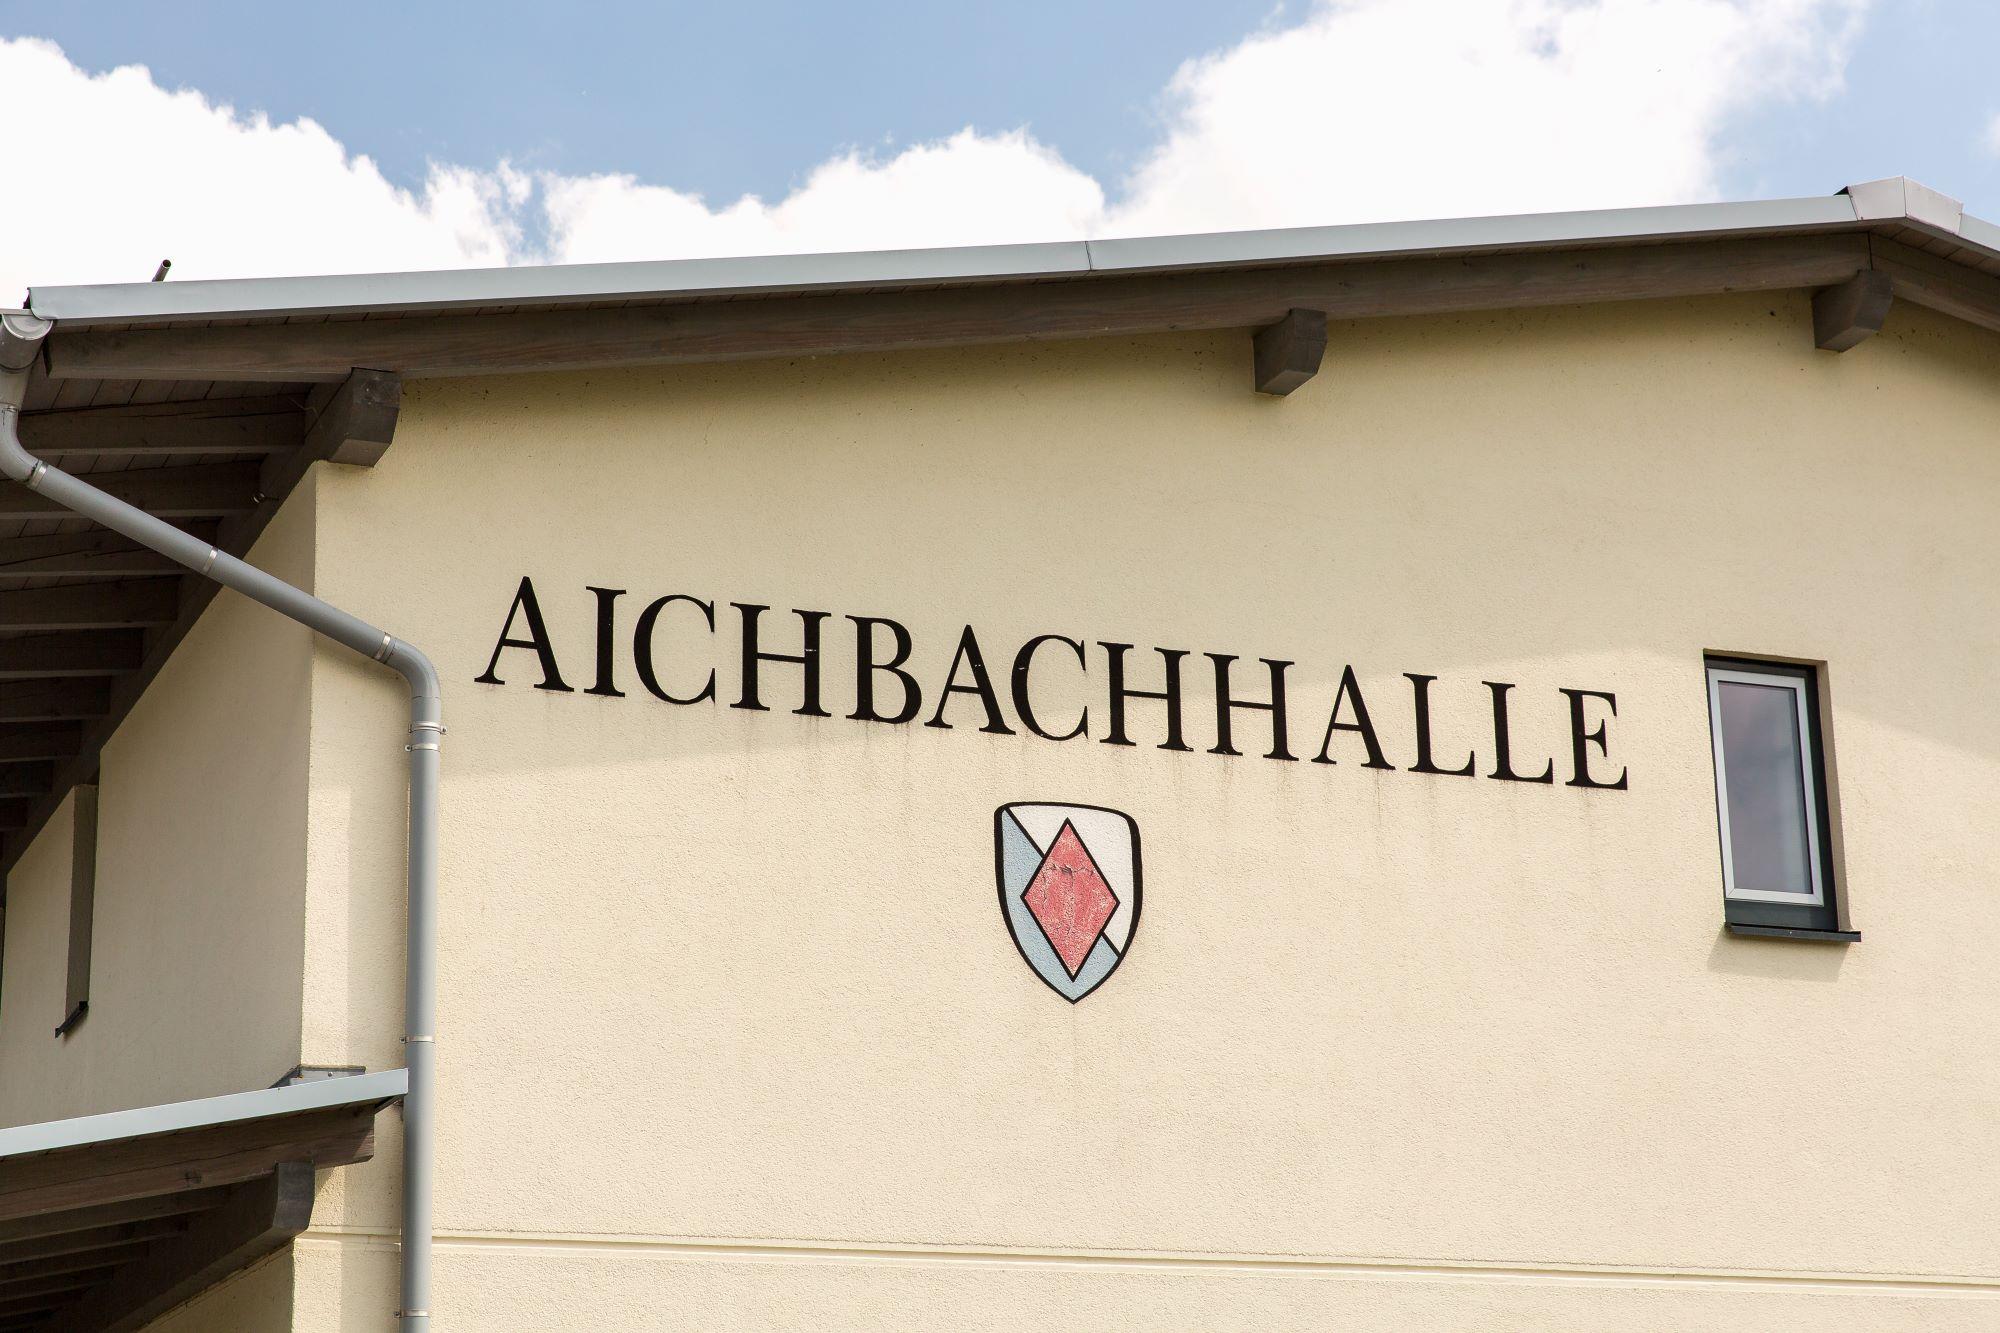 Aichbachhalle